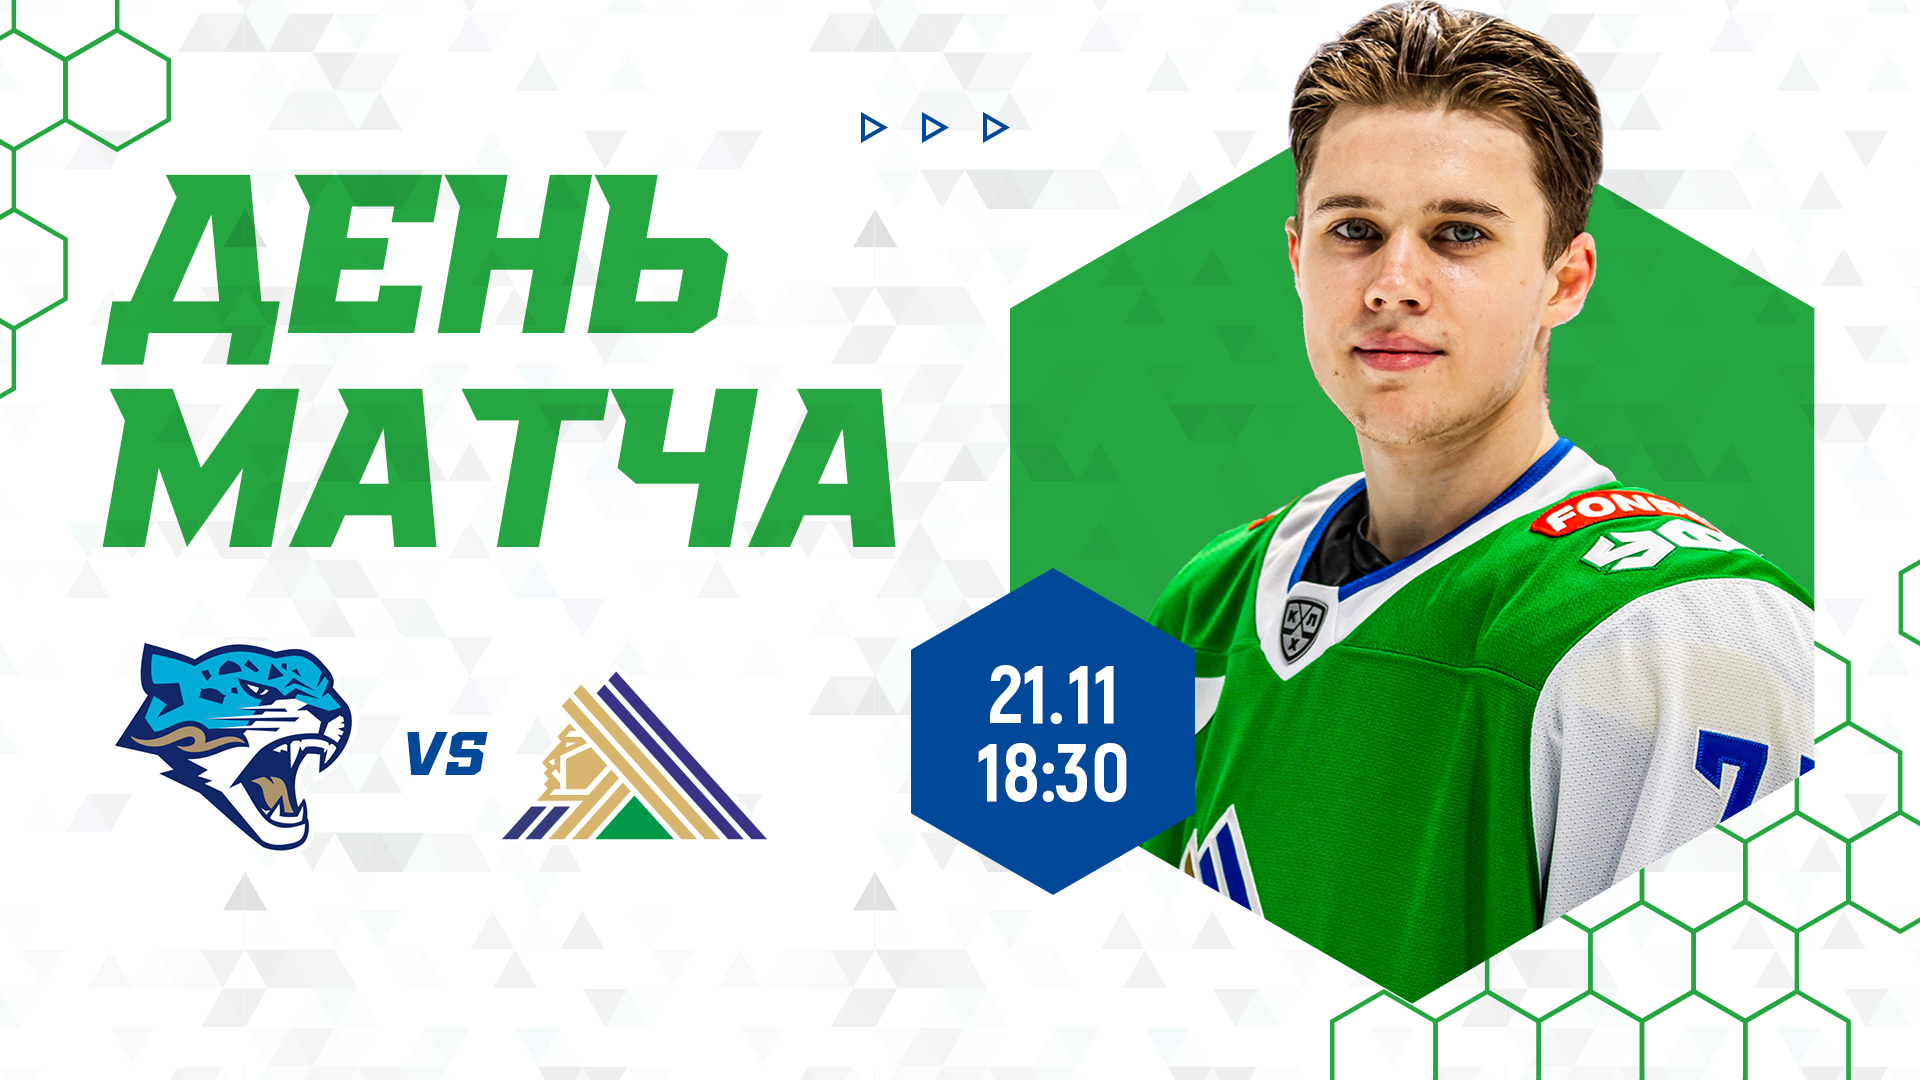 «Барыс» vs «Салават Юлаев», начало игры в 18:30